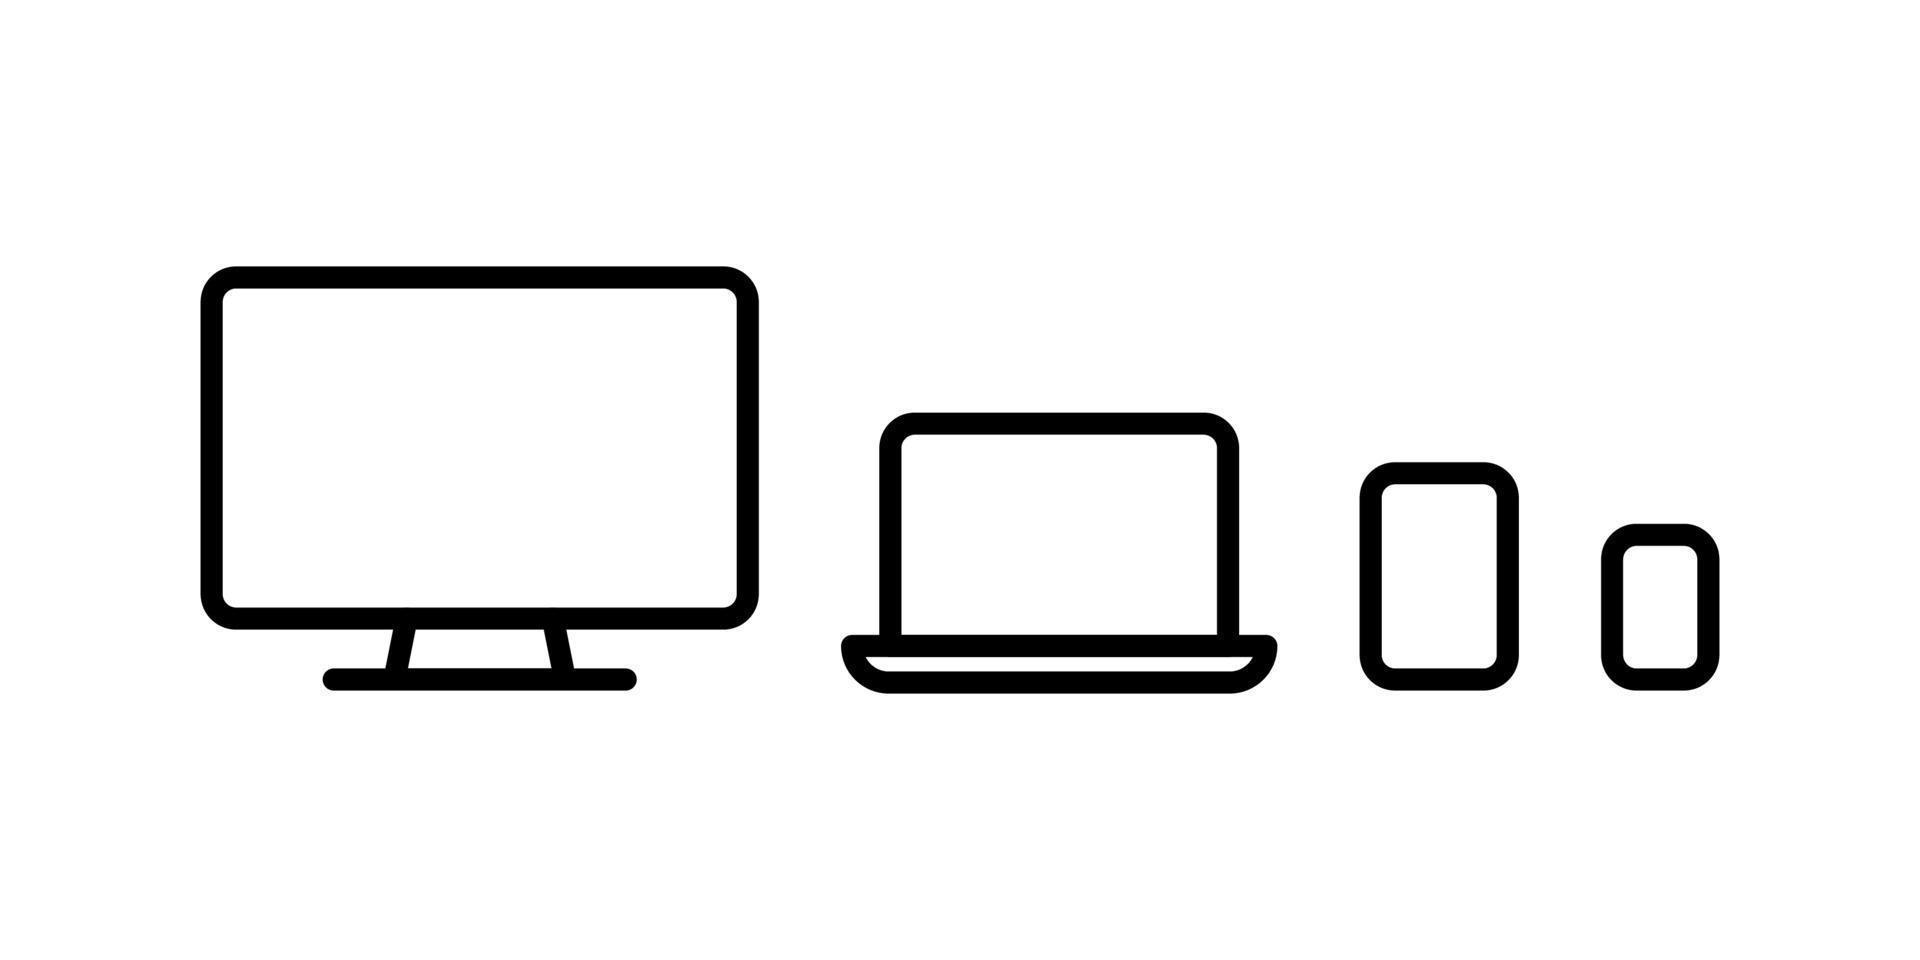 smartphone, tablet, laptop en computer set met lege schermbeveiliging geïsoleerd op een witte achtergrond. voorraad vector overzicht illustratie